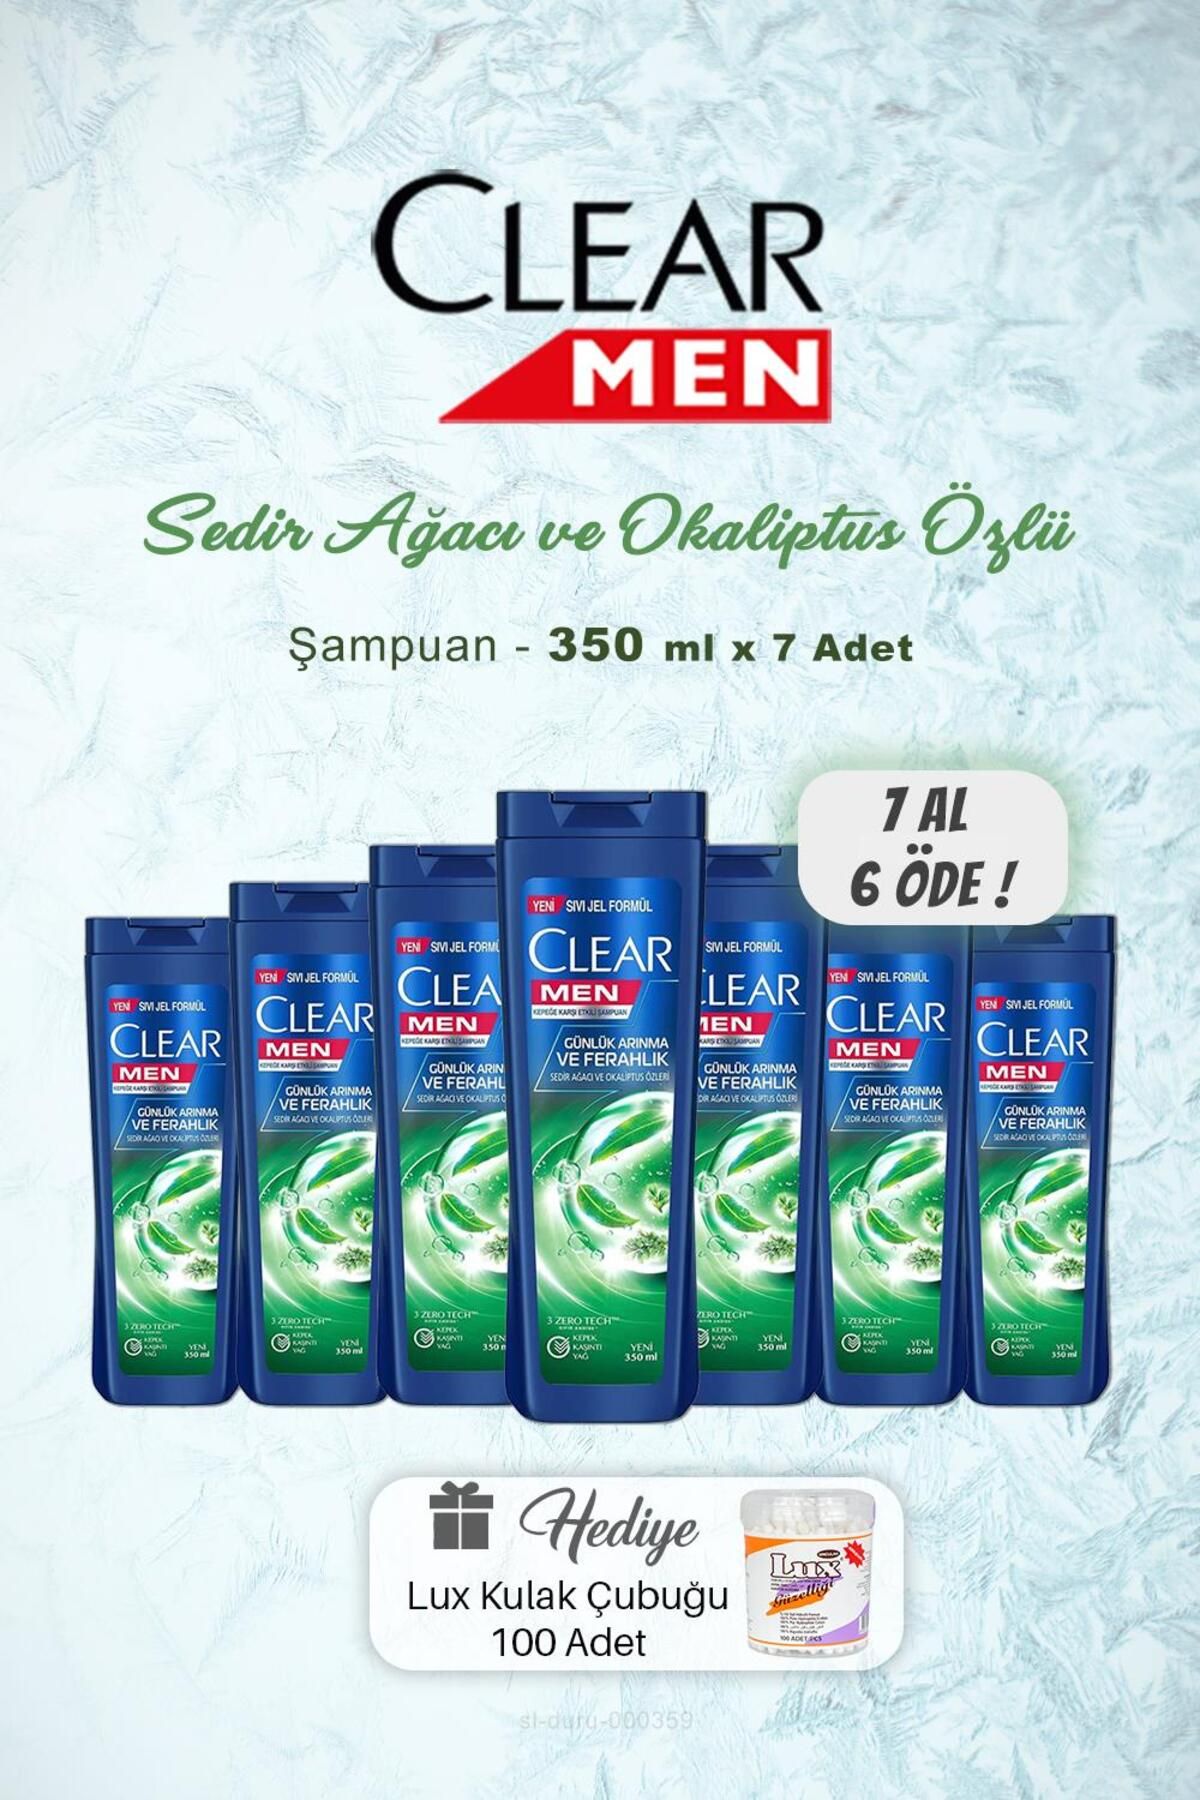 Clear 7 AL 6 ÖDE Clear Men Günlük Arındırıcı Şampuan 350 ml, Kulak Çubuğu Hediyeli